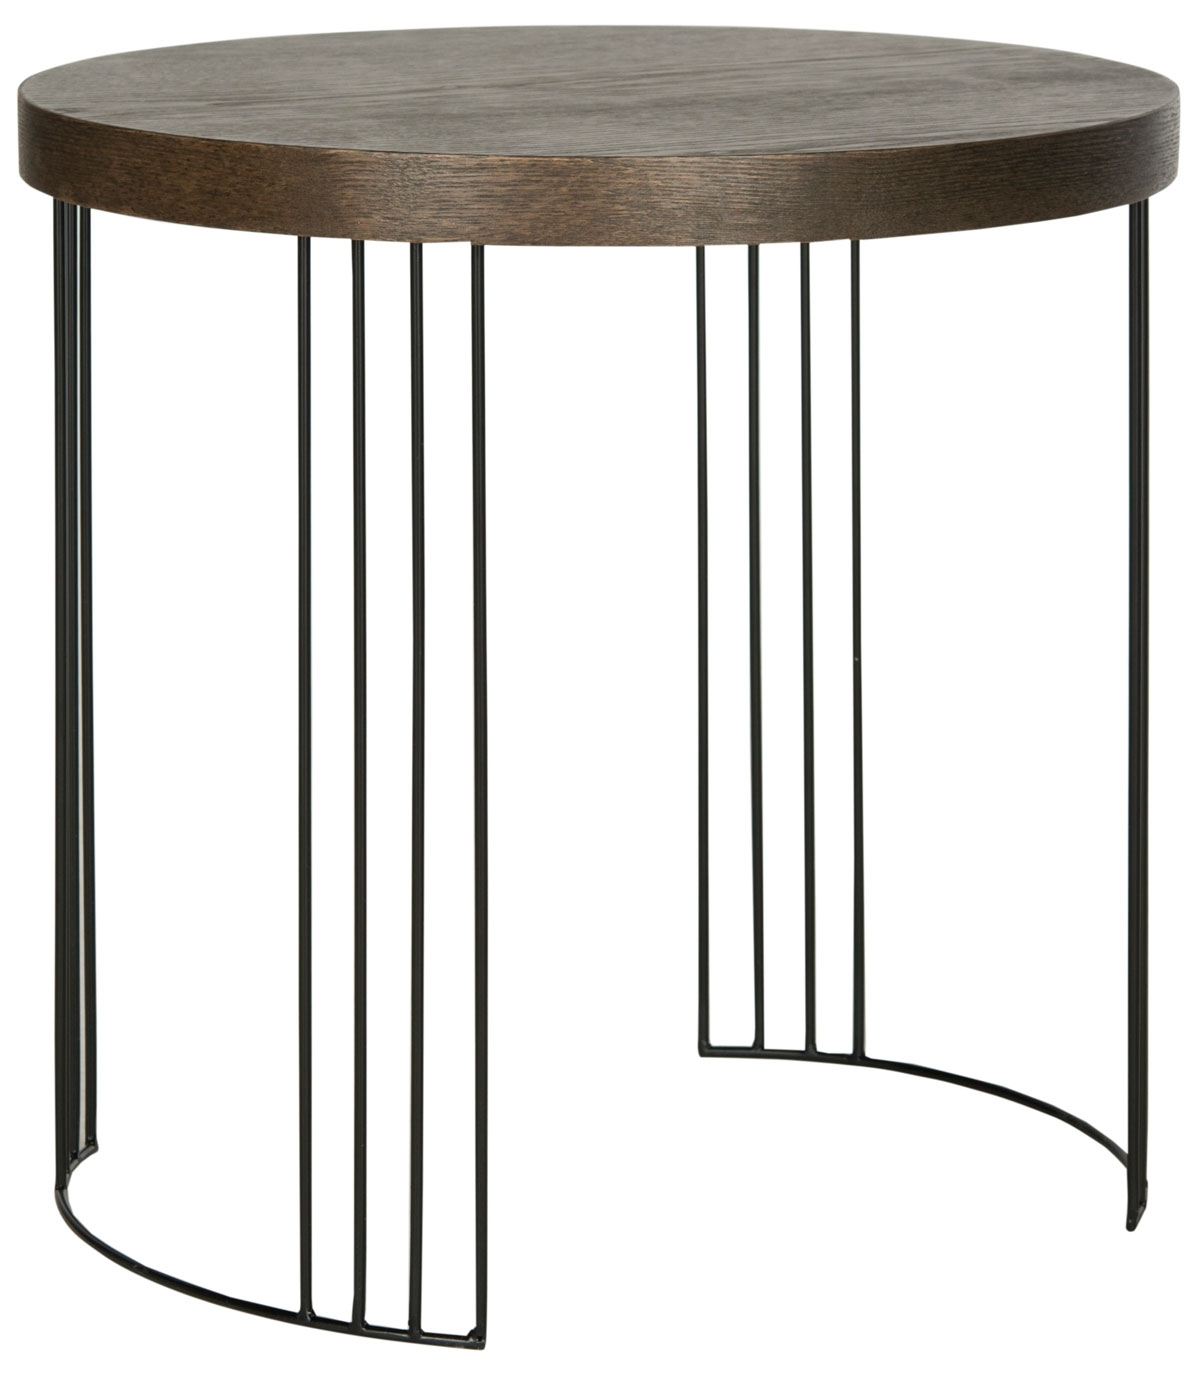 Kelly Mid Century Scandinavian Wood Side Table - Dark Brown/Black - Safavieh - Image 1